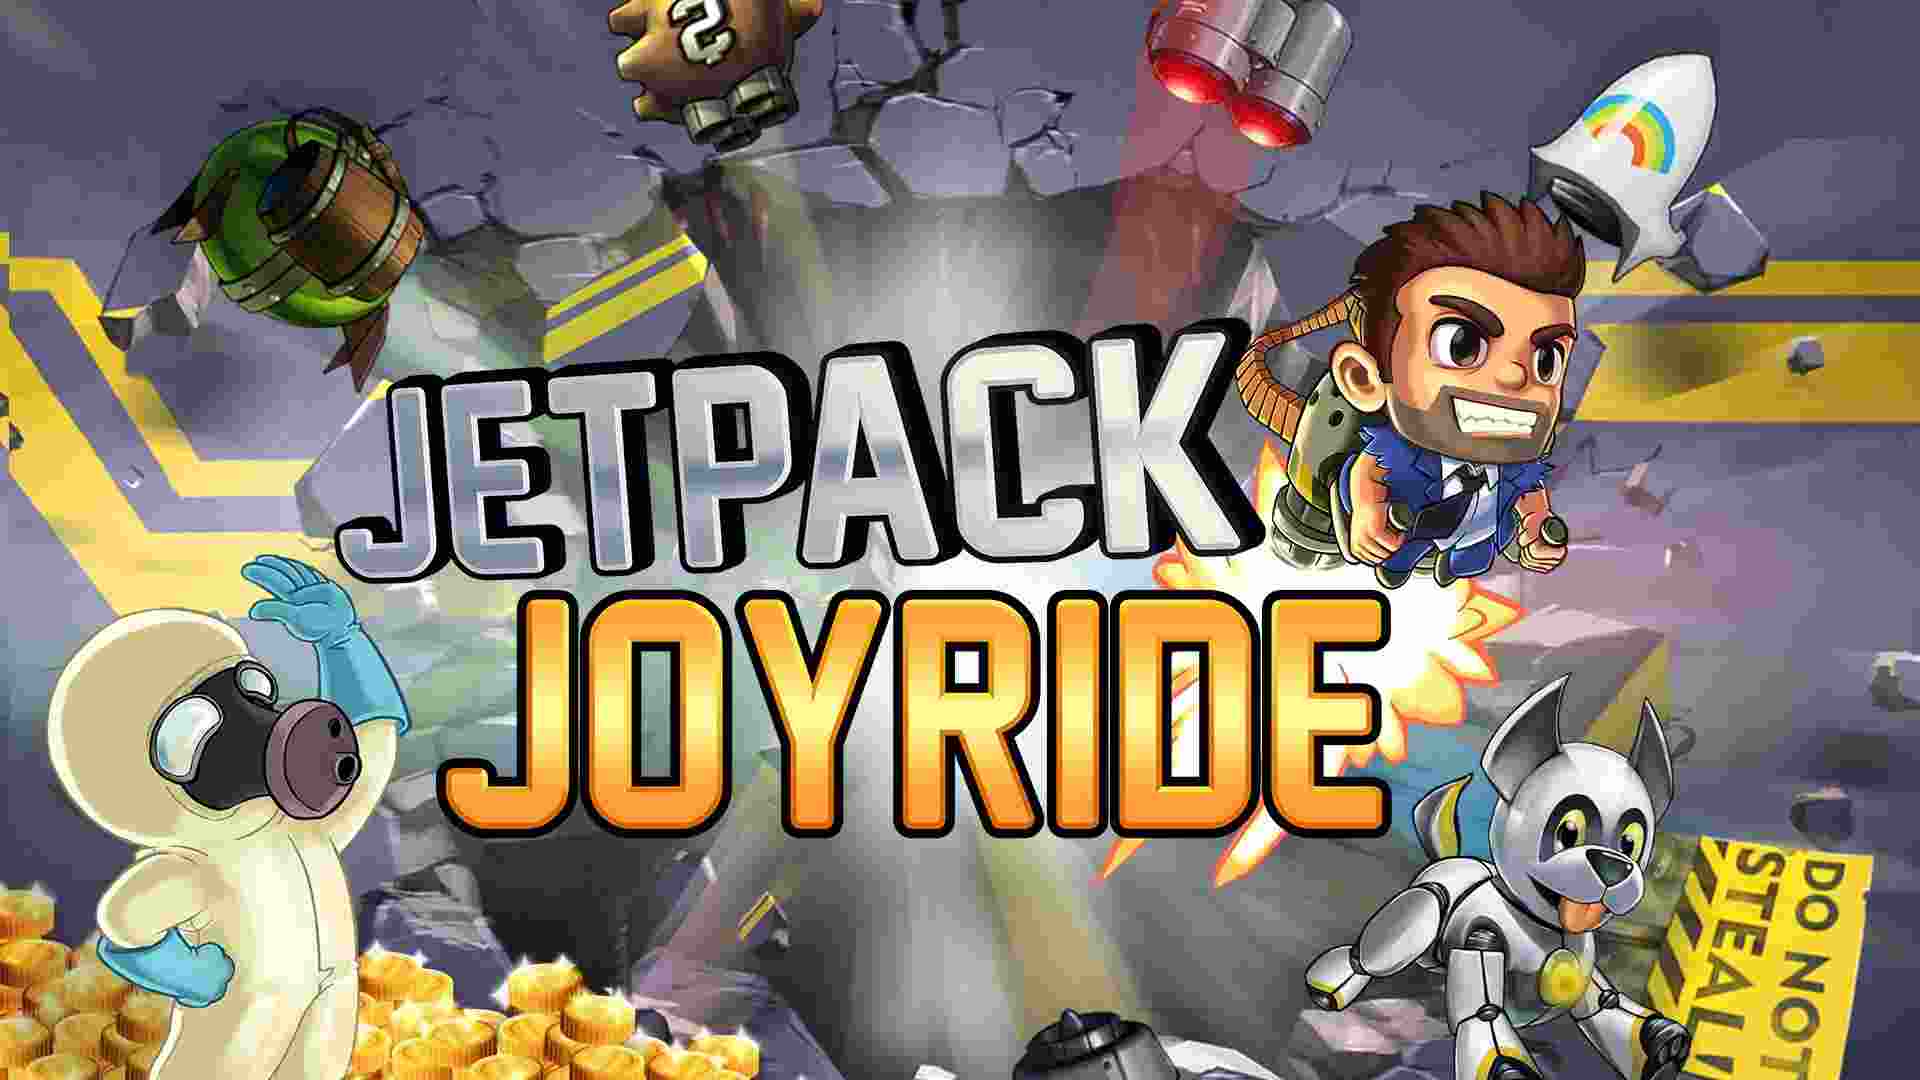 Jetpack Joyride 1.93.2 MOD Menu VIP, Unlimited Coins, God mode APK